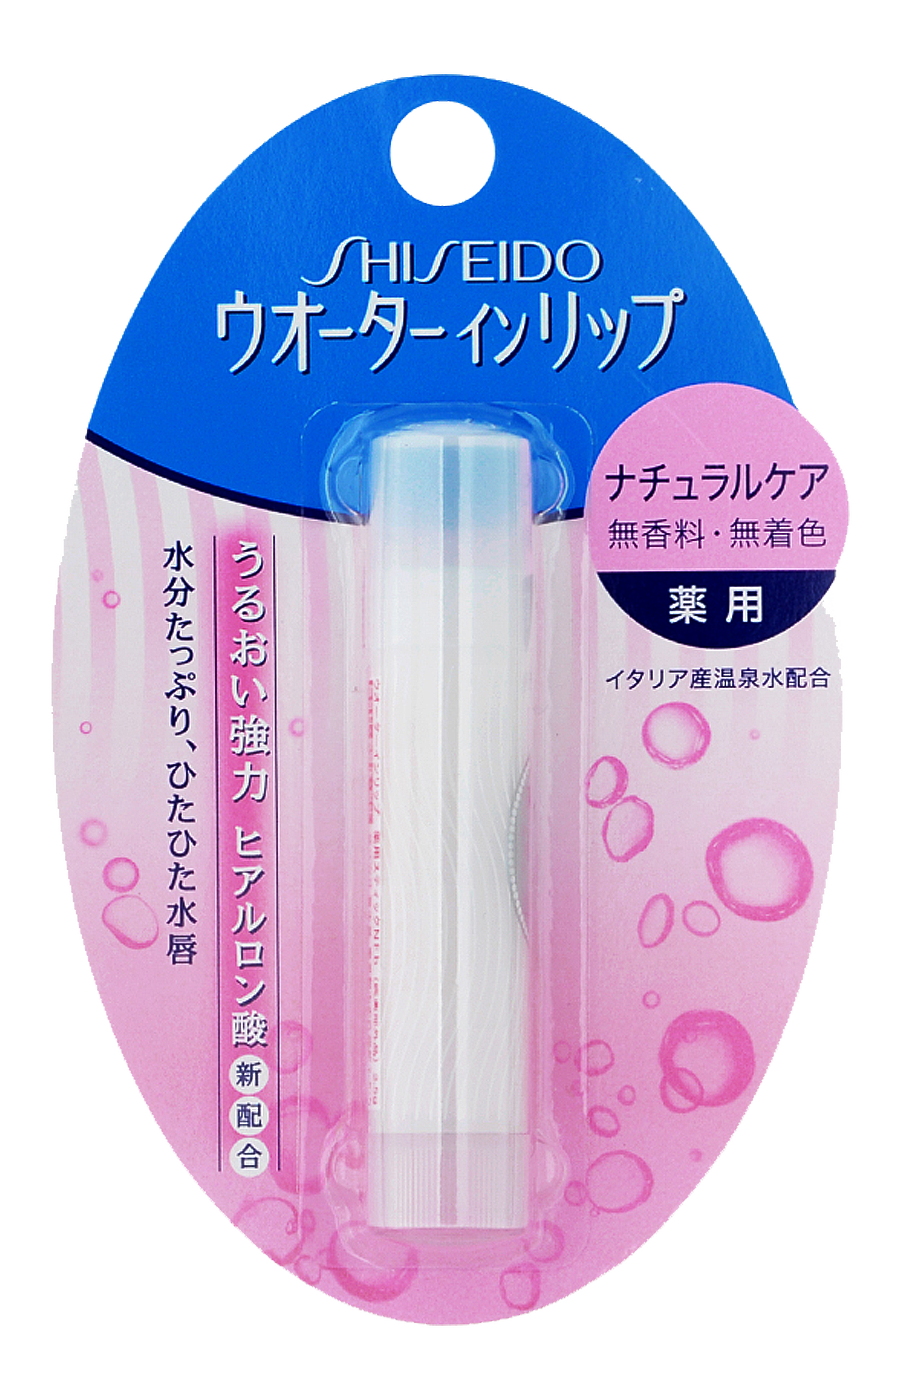 Shiseido Water In Lip гигиеническая увлажняющая губная помада с гиалуроновой кислотой без аромата